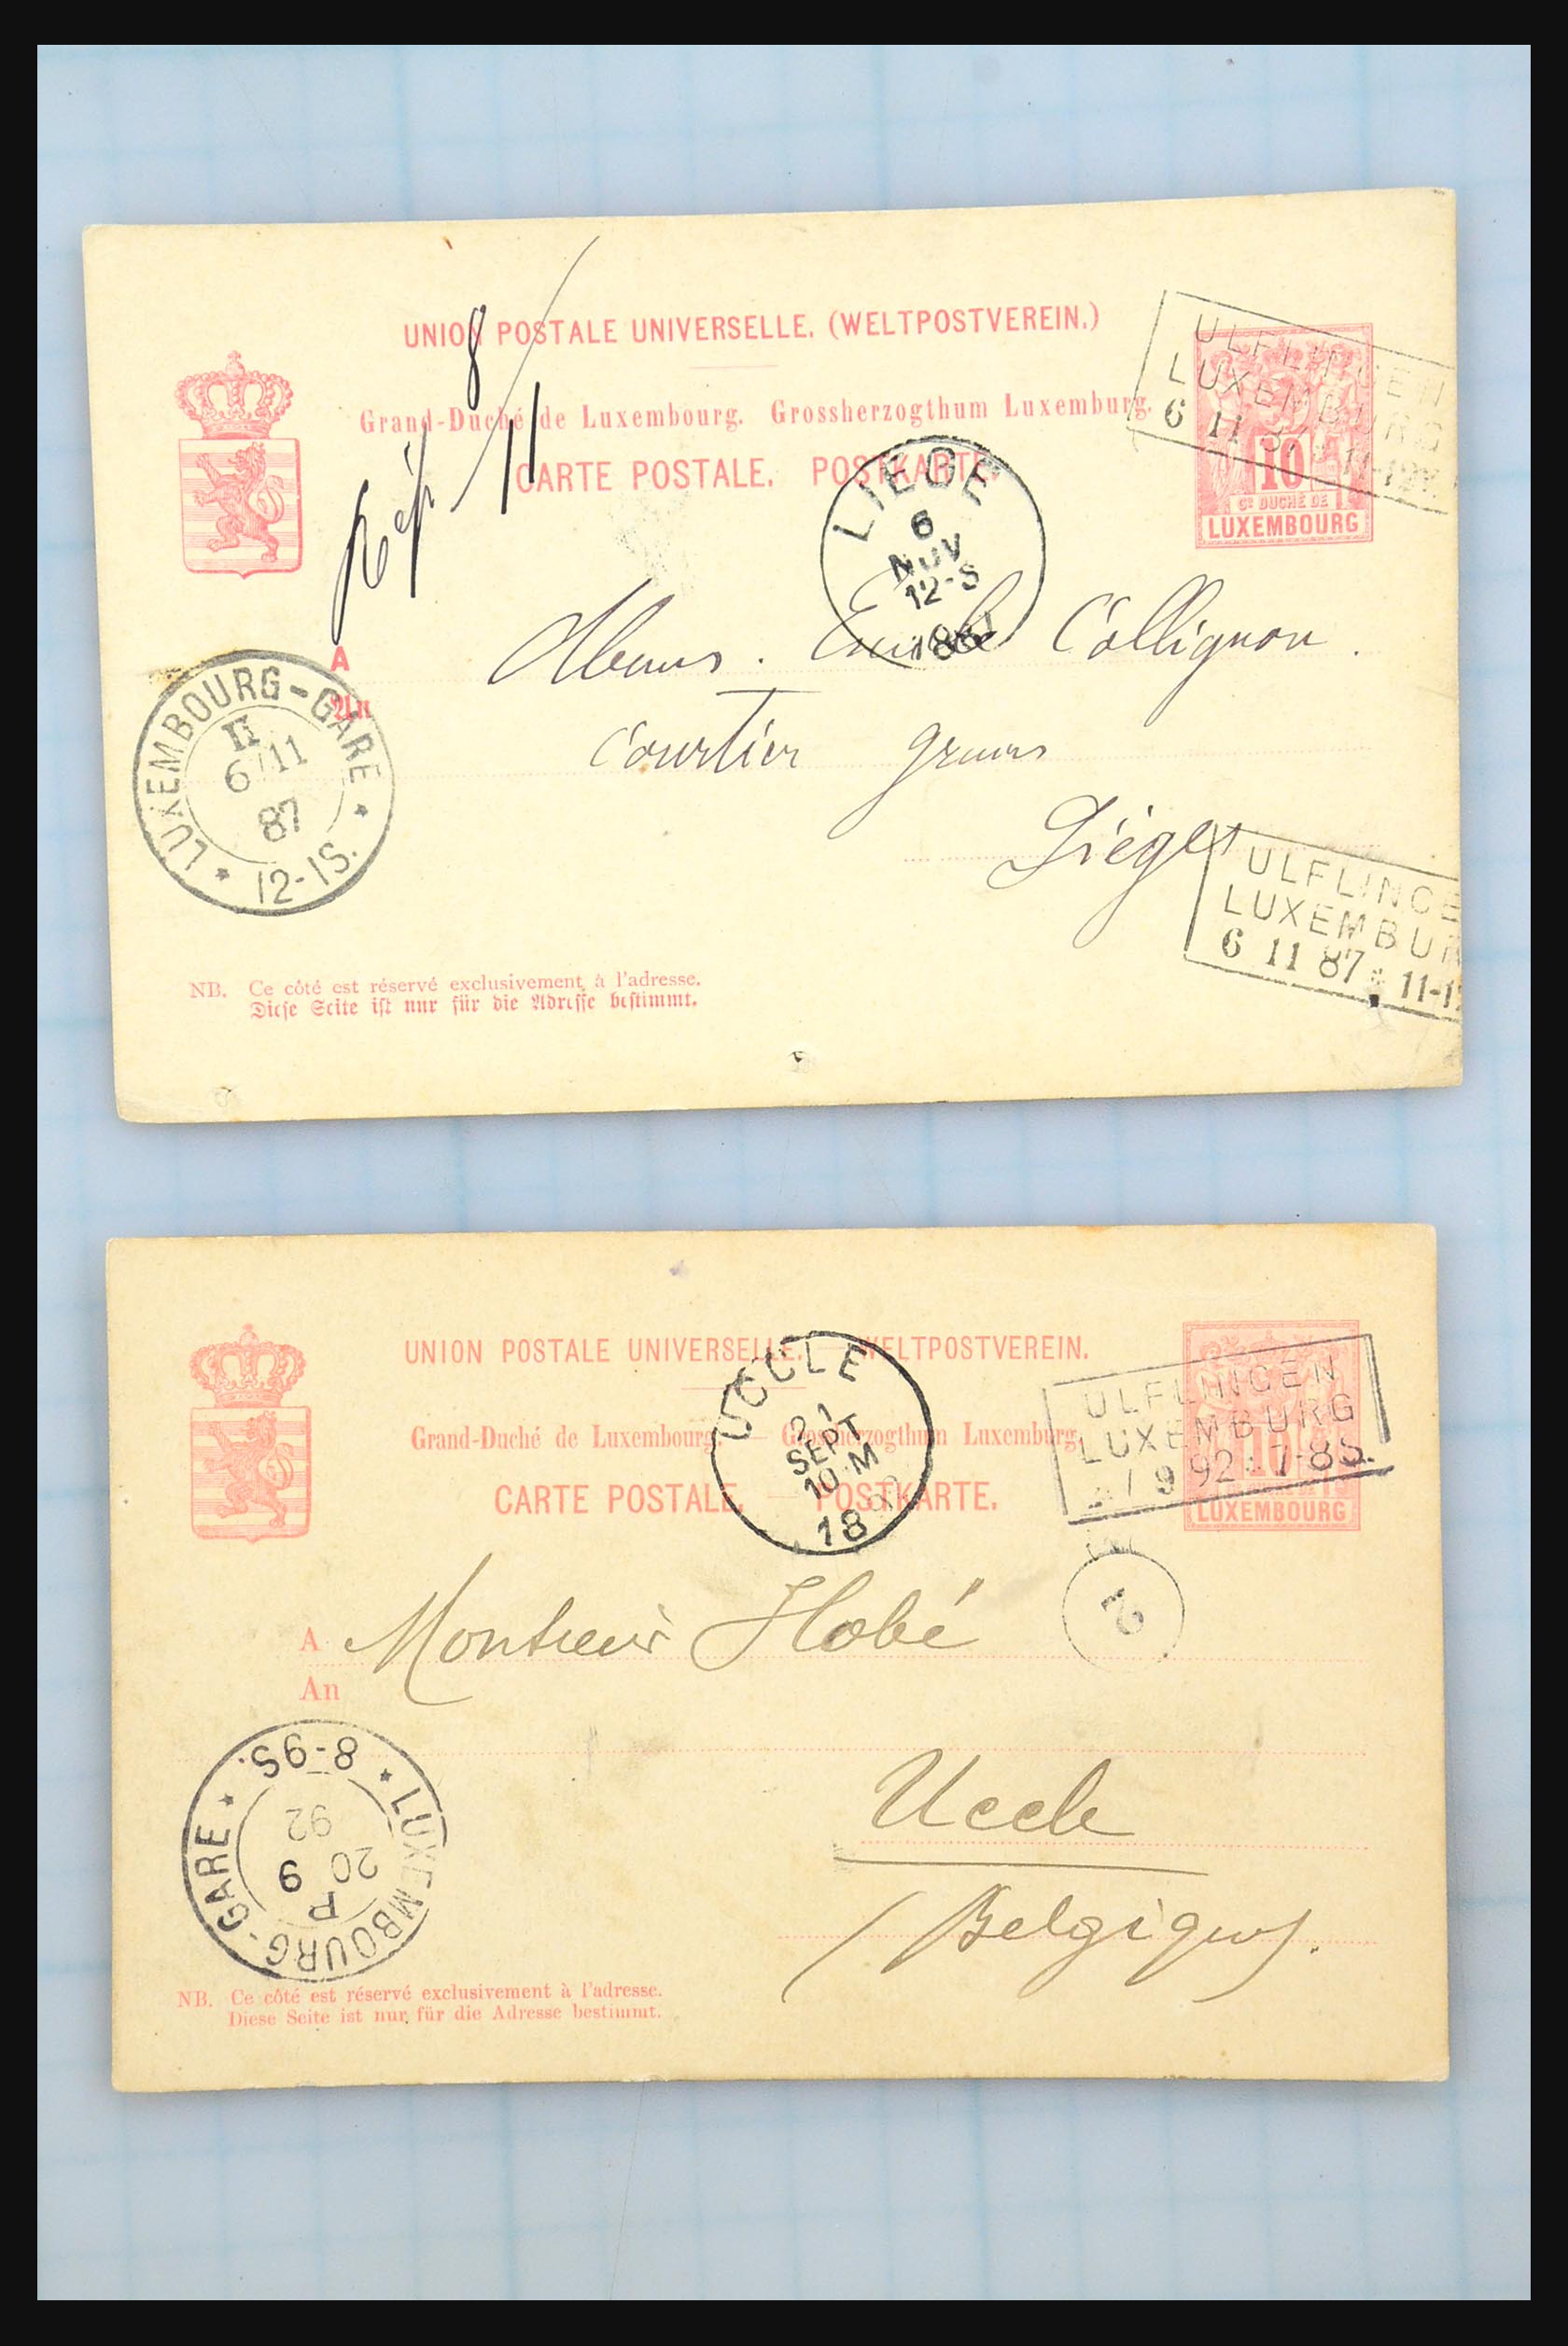 31358 101 - 31358 Portugal/Luxemburg/Griekenland brieven 1880-1960.